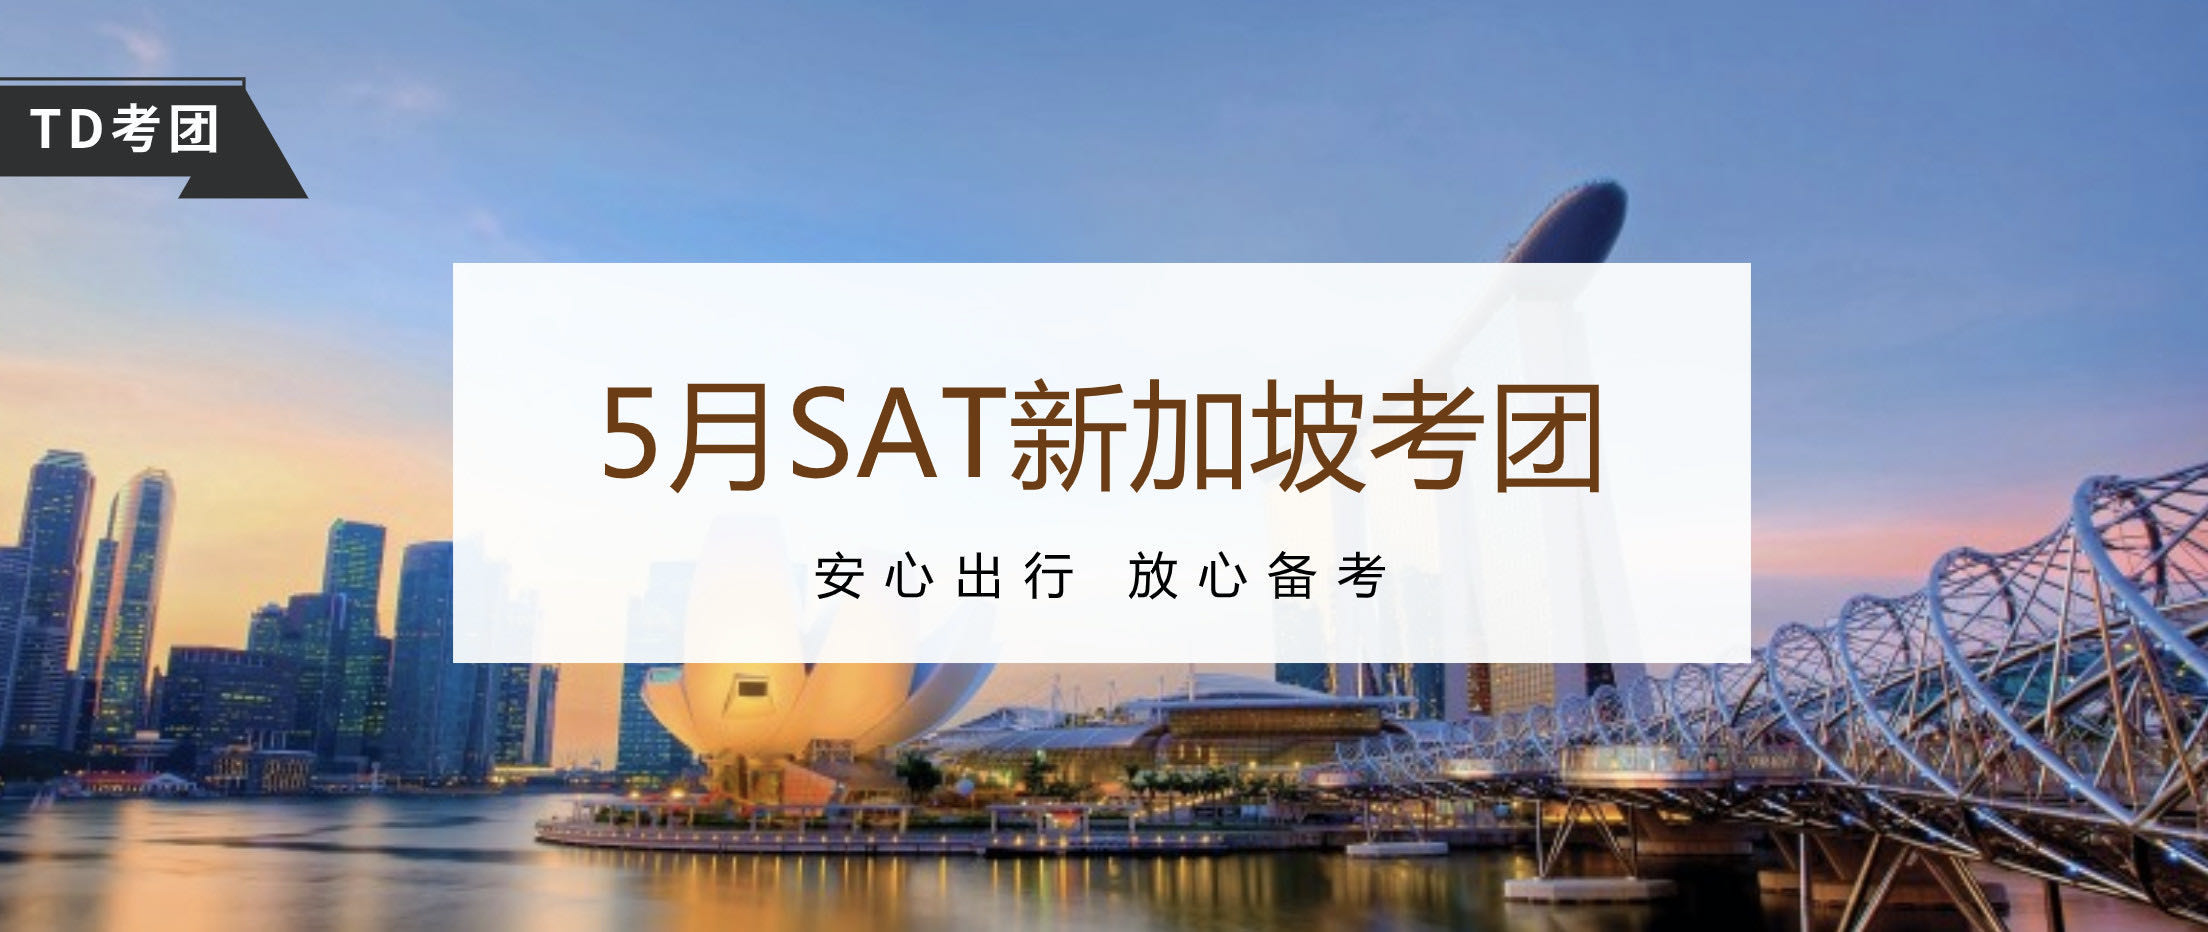 2020年5月SAT新加坡考团招生中-TD SAT考试团